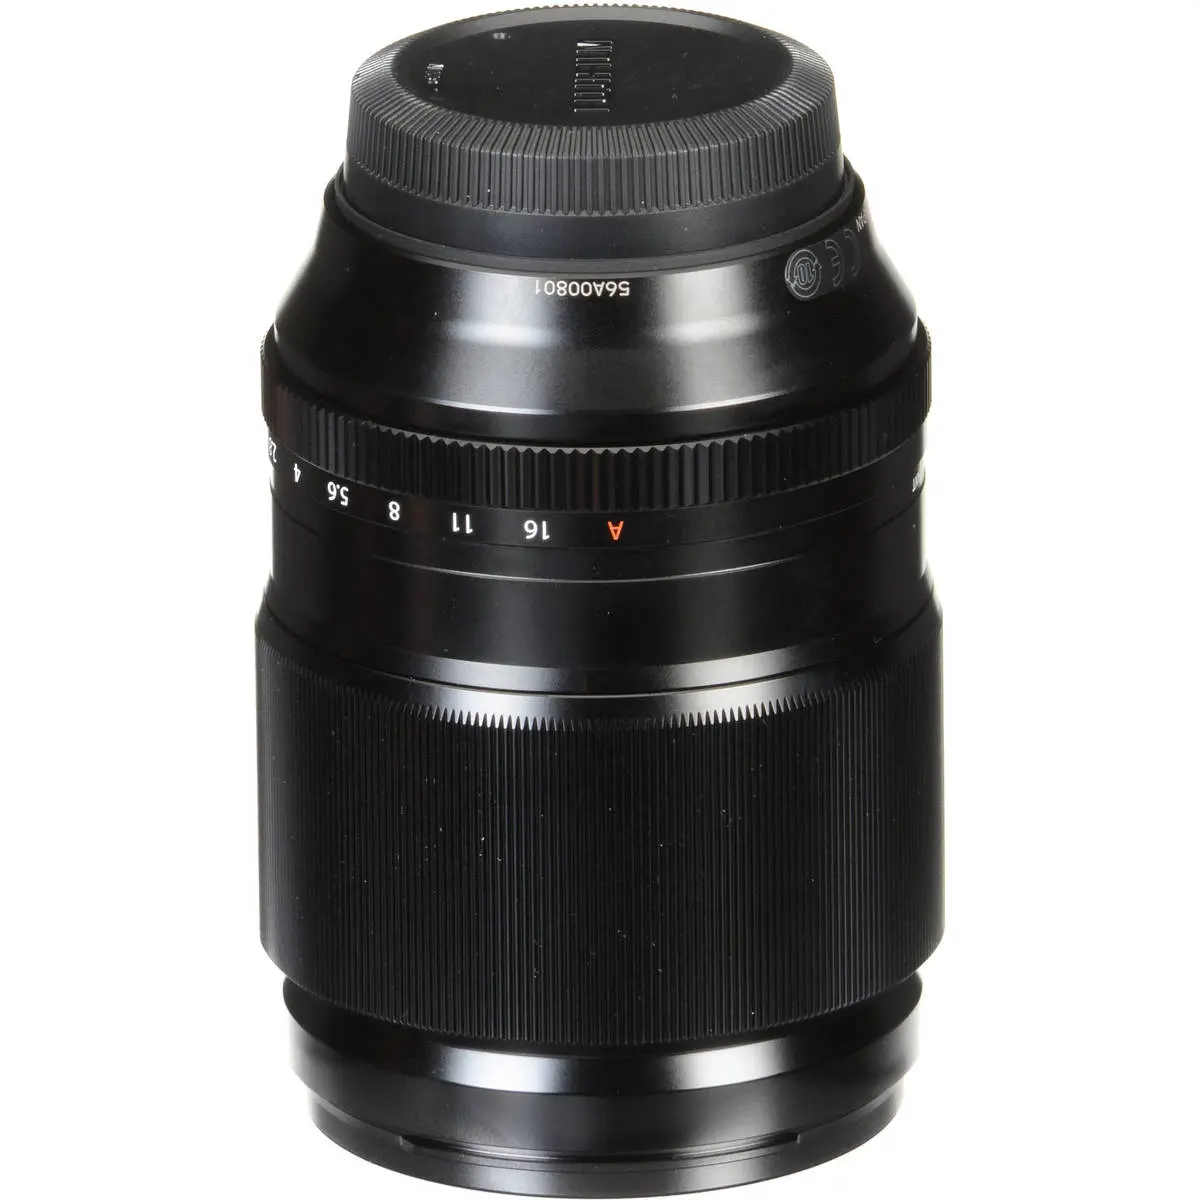 6. Fujifilm FUJINON XF 90mm F2 R LM WR Lens